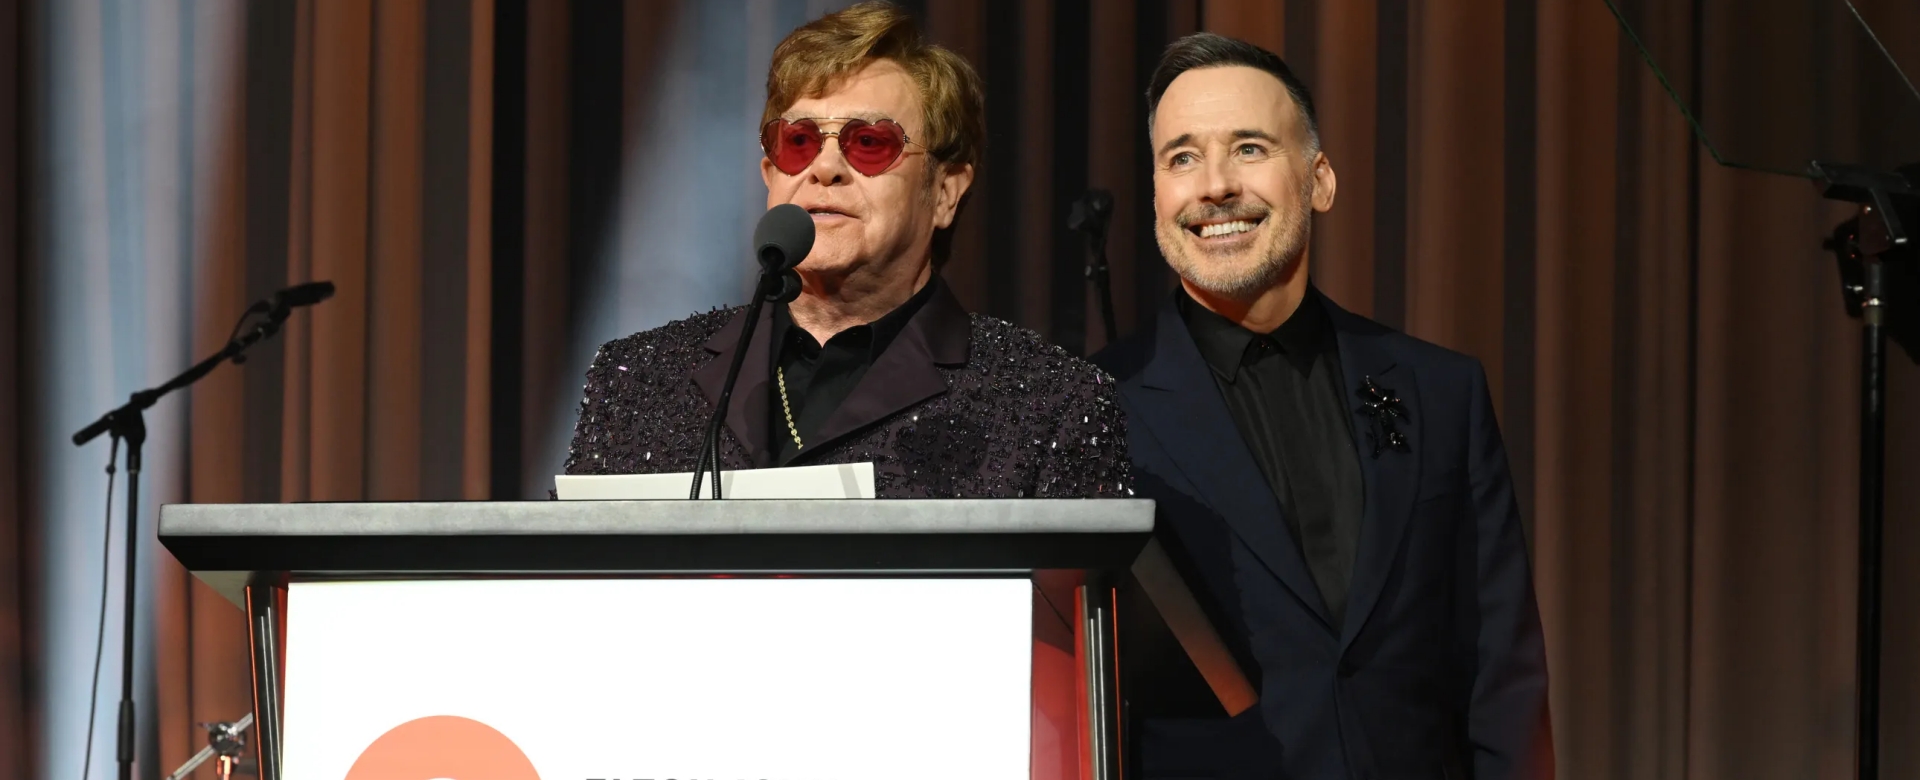 Don Julio xuất hiện ấn tượng tại sự kiện vì cộng đồng của huyền thoại Elton John